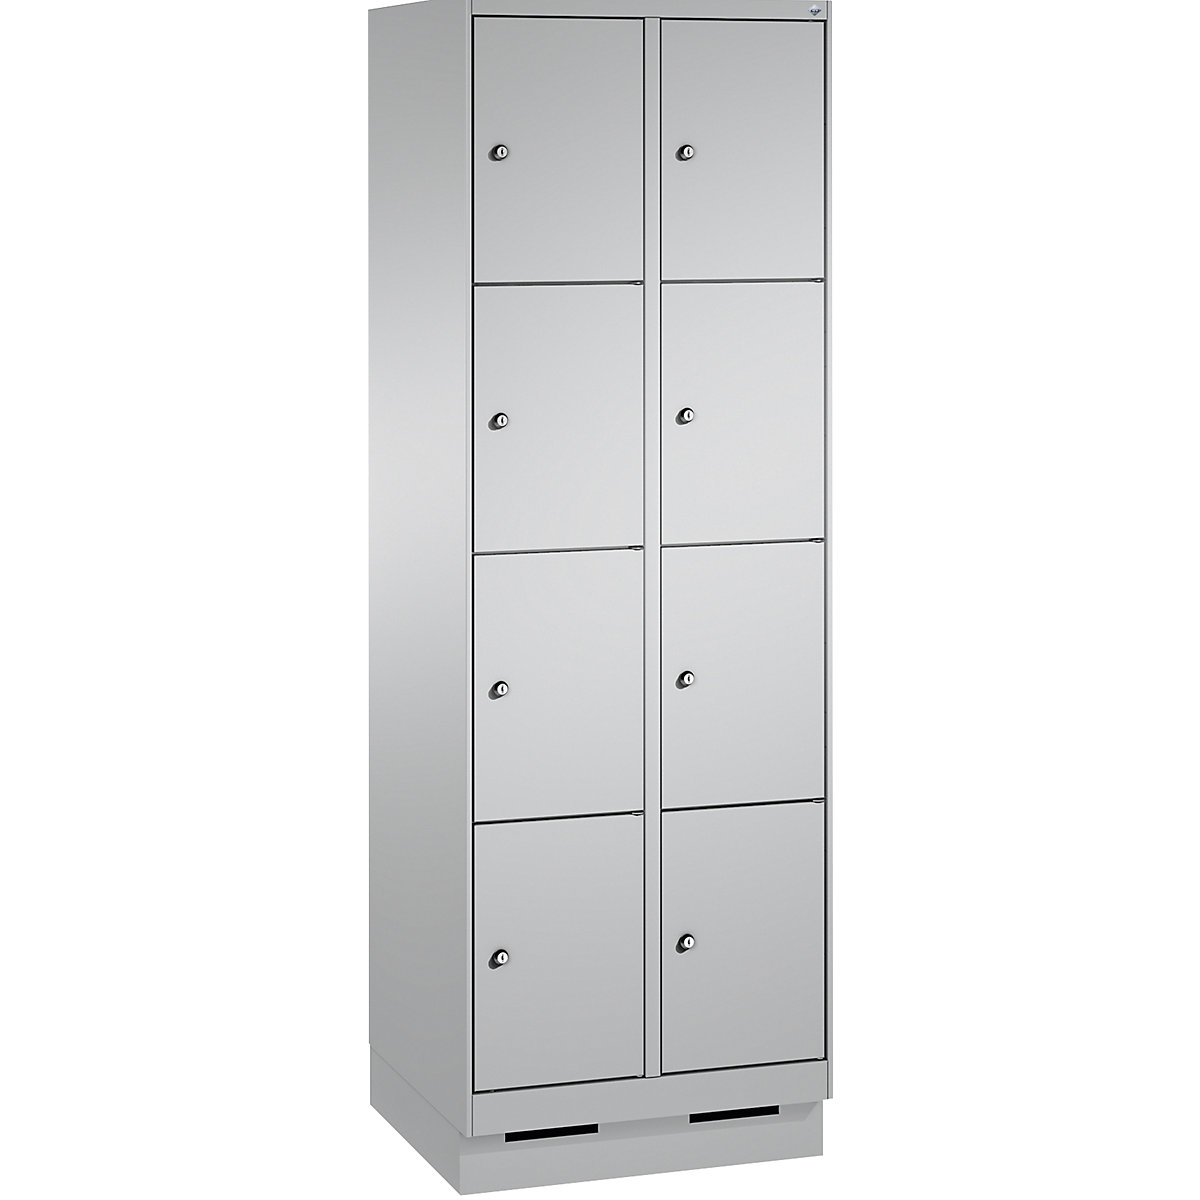 Armoire à casiers sur socle EVOLO – C+P, 2 compartiments, 4 casiers chacun, largeur compartiments 300 mm, aluminium / aluminium-10